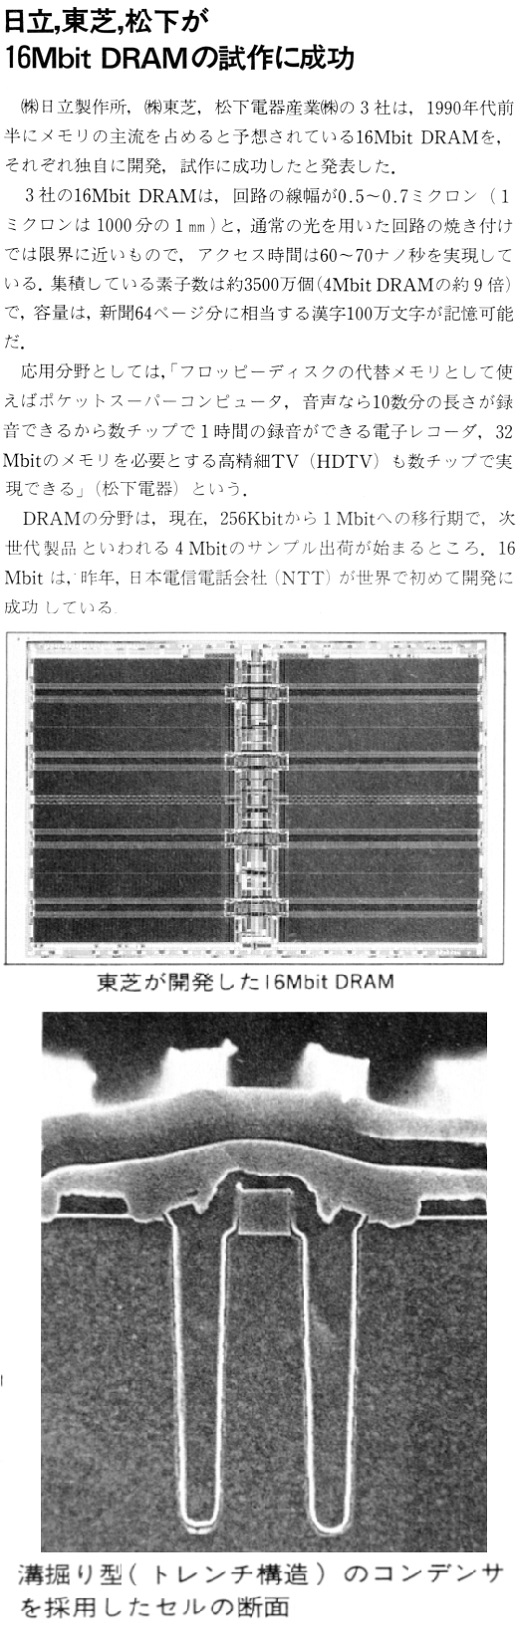 ASCII1988(04)b09日立東芝松下16MbitDRAM試作_W520.jpg